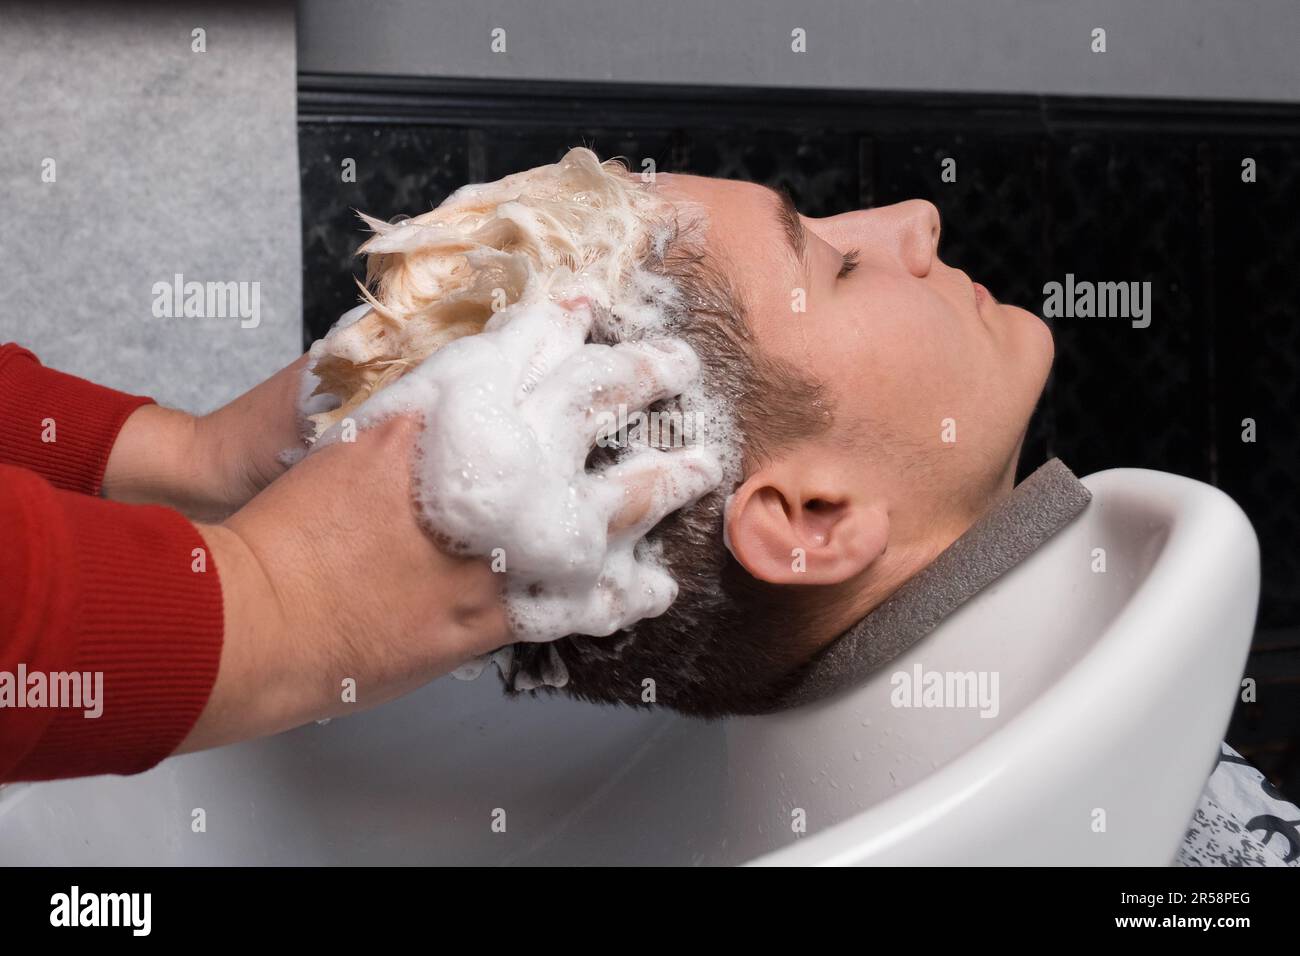 Les mains du coiffeur laver les cheveux et la tête du client du coiffeur avec de la mousse dans l'évier avant de couper les cheveux. Banque D'Images